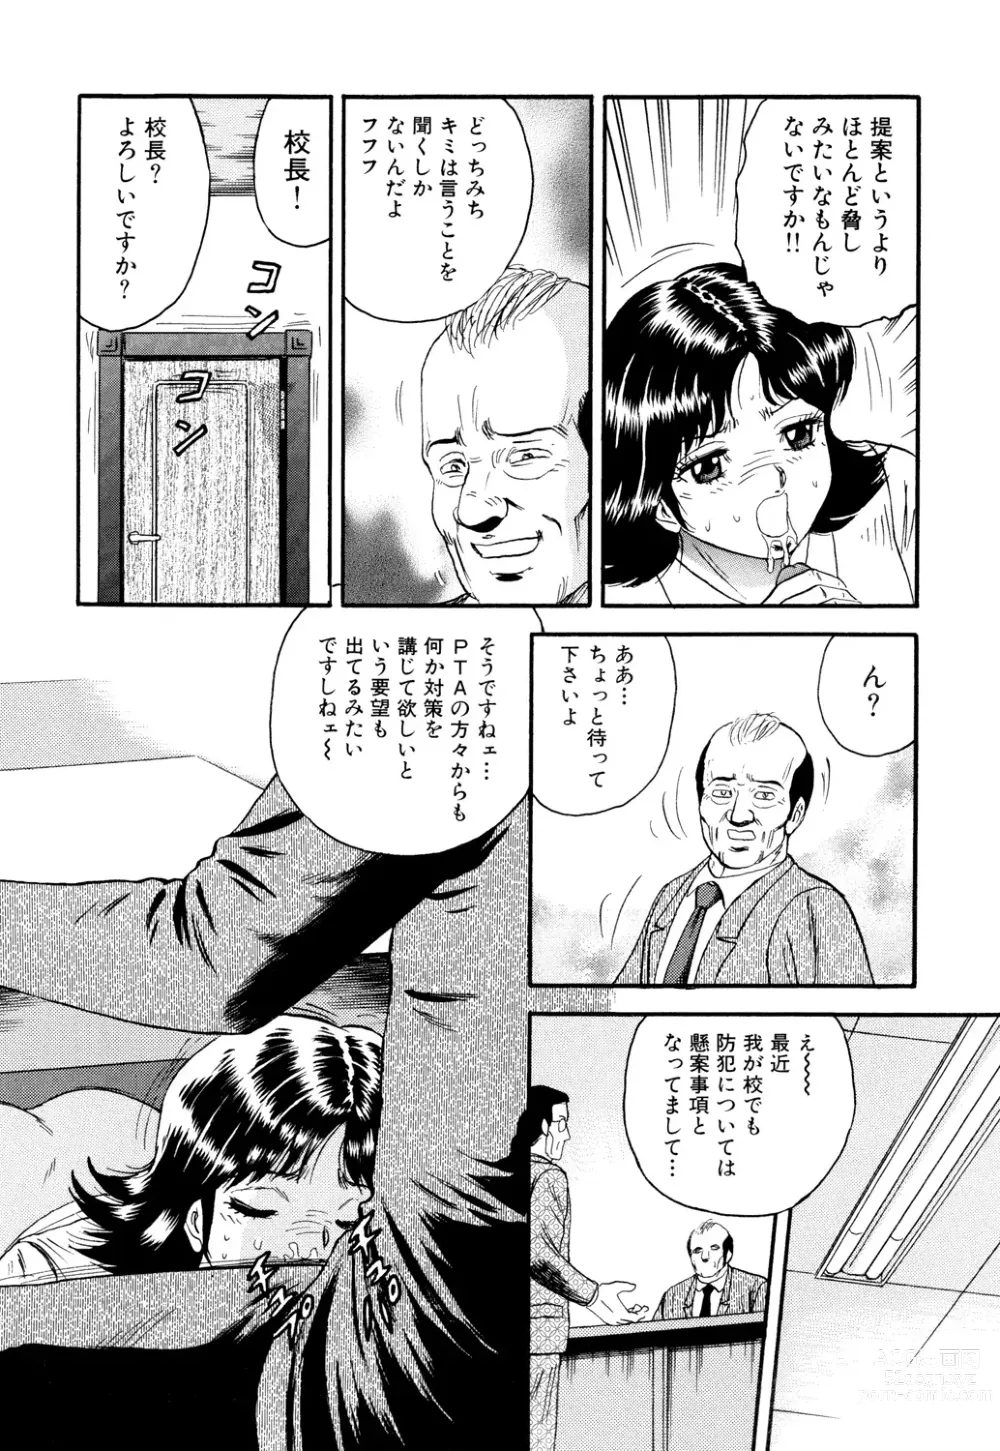 Page 6 of manga Nikuyoku no Utage